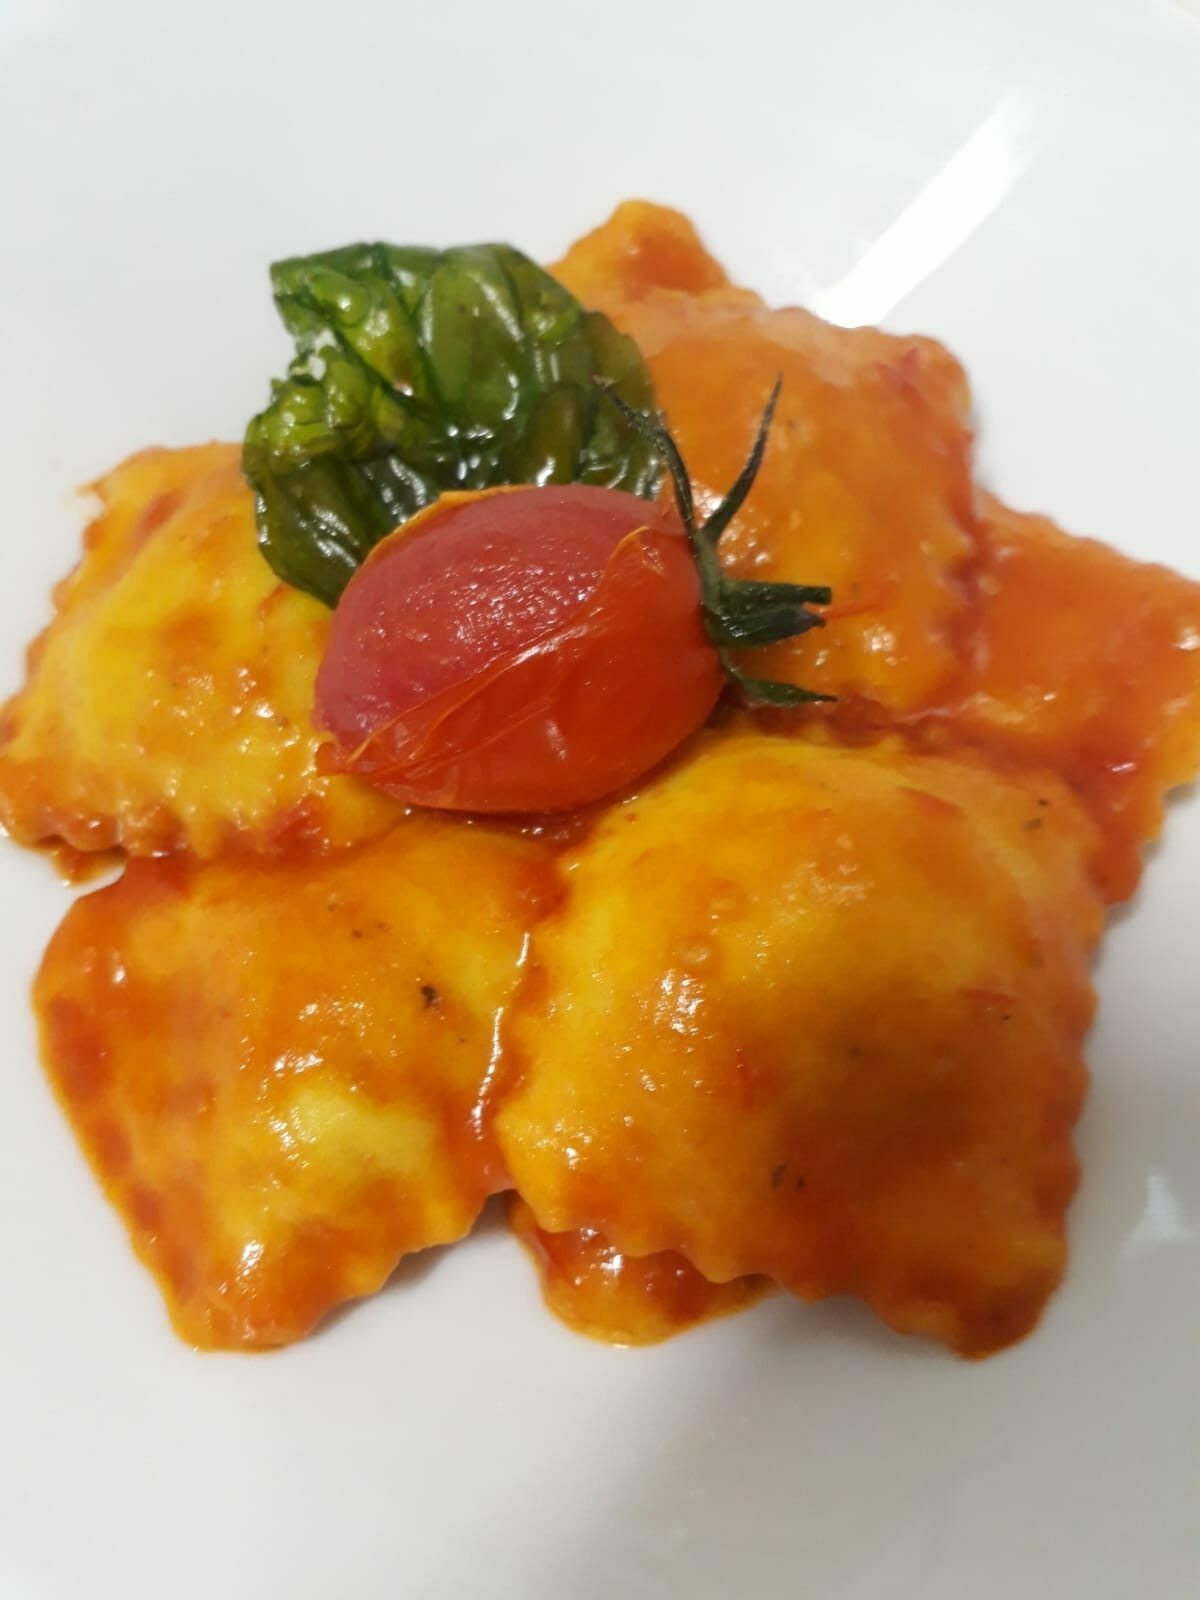 Featured image for “Tortelloni ripieni di scamorza e melanzane”